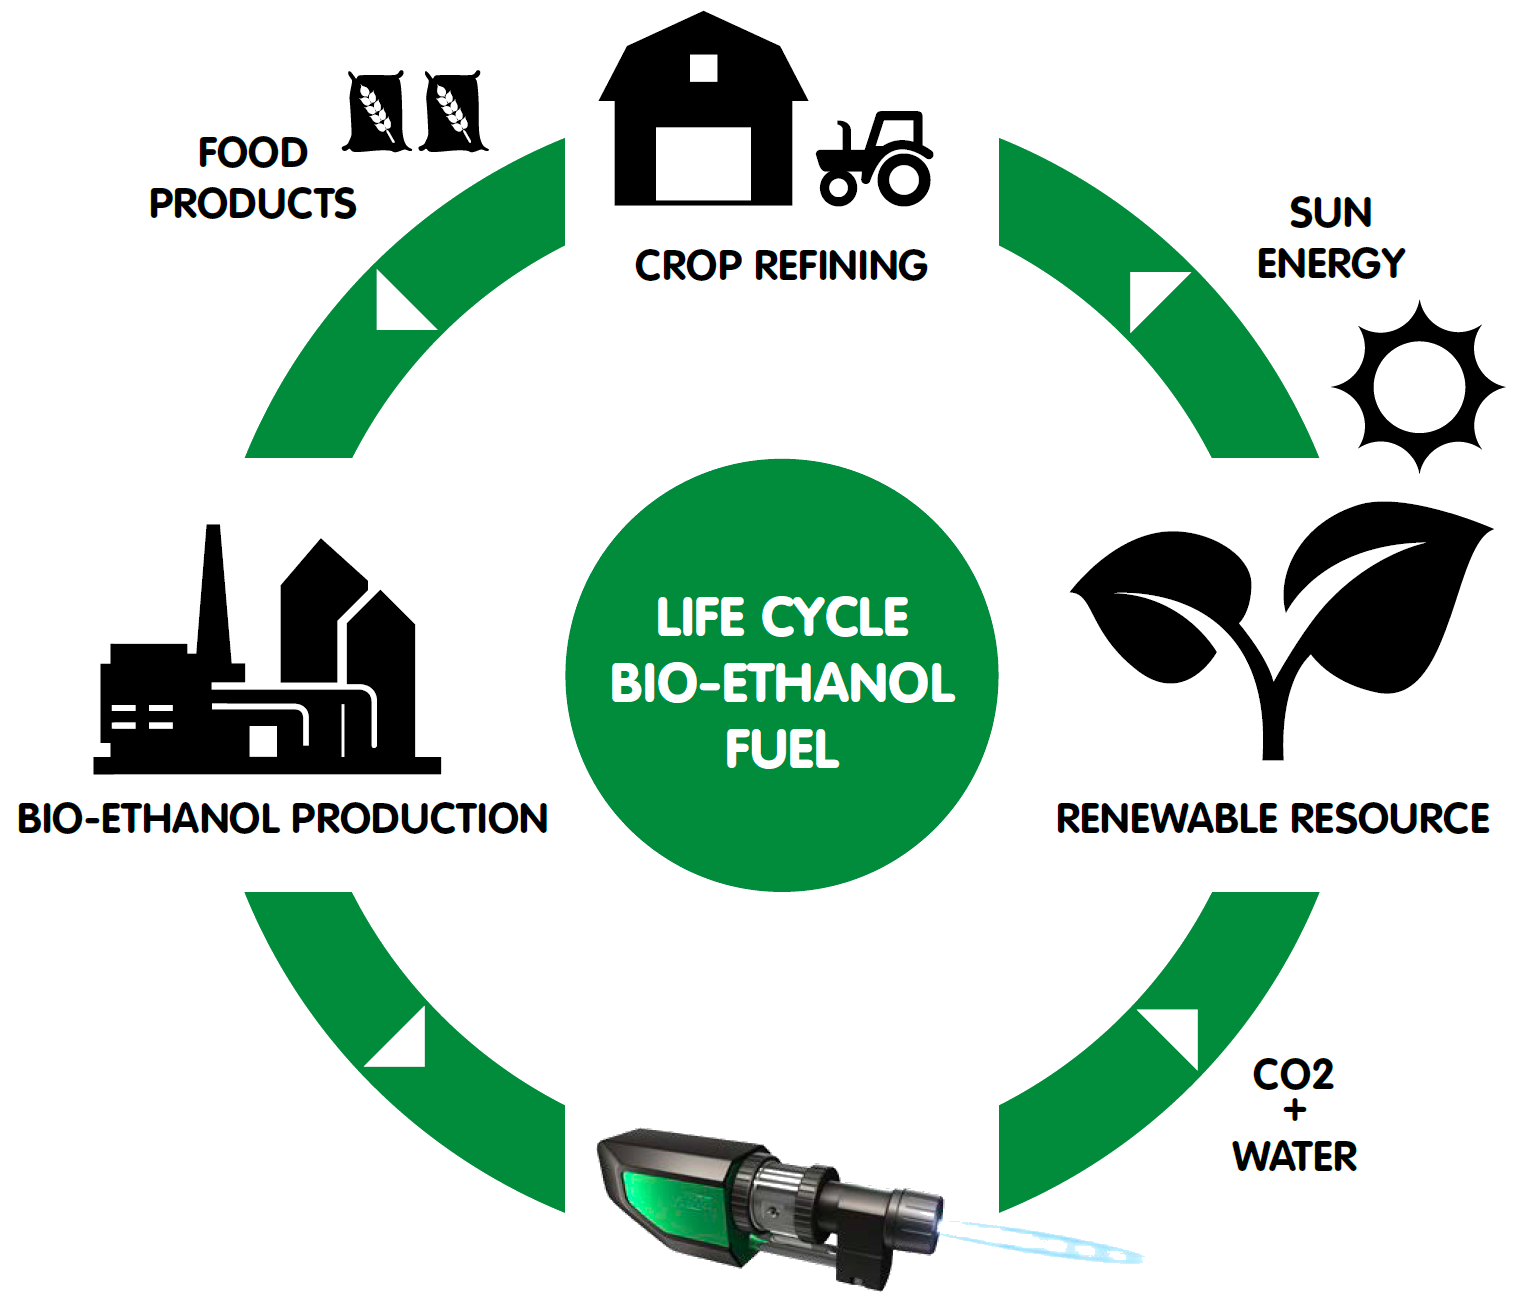 Figure 2: Bio-ethanol fuel life cycle